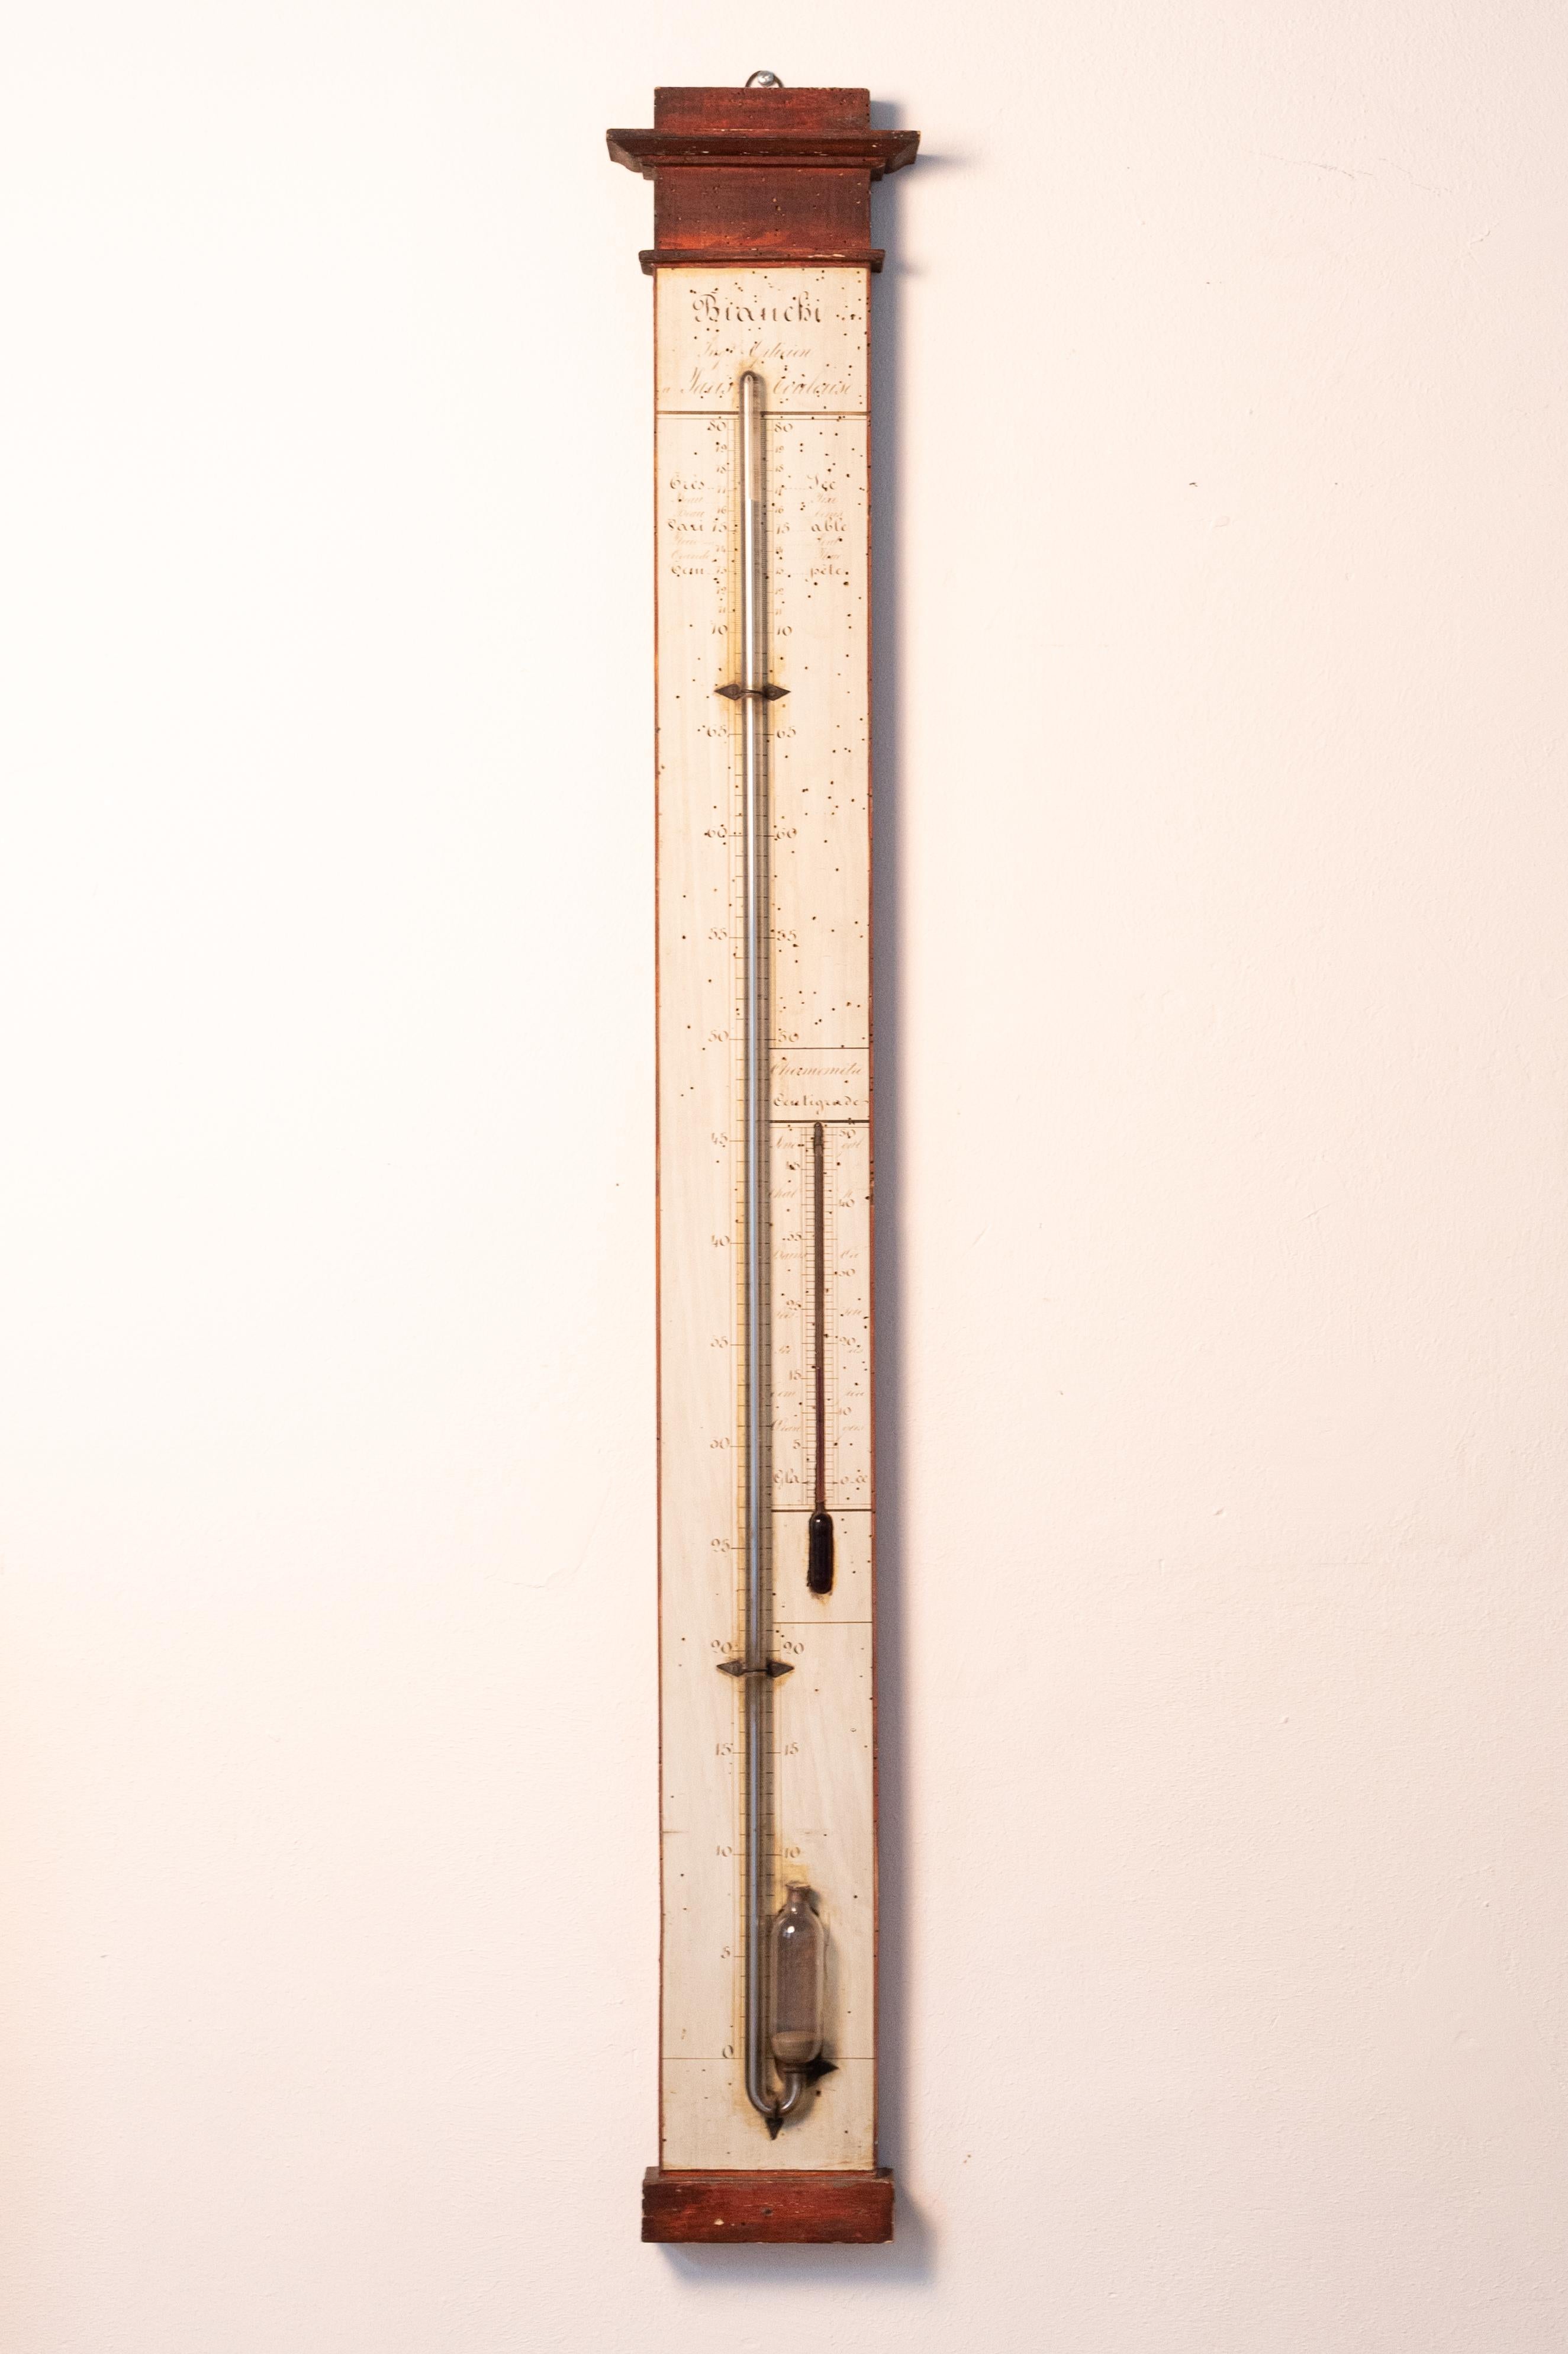 Ce thermomètre/baromètre à mercure peint à la main date de la première moitié du XIXe siècle. Il a été fabriqué par Bianchi, comme on peut le lire en haut du thermomètre. Très rare ! 

Barthélémy-Urbain BIANCHI (1821-1898), ingénieur-opticien, s'est